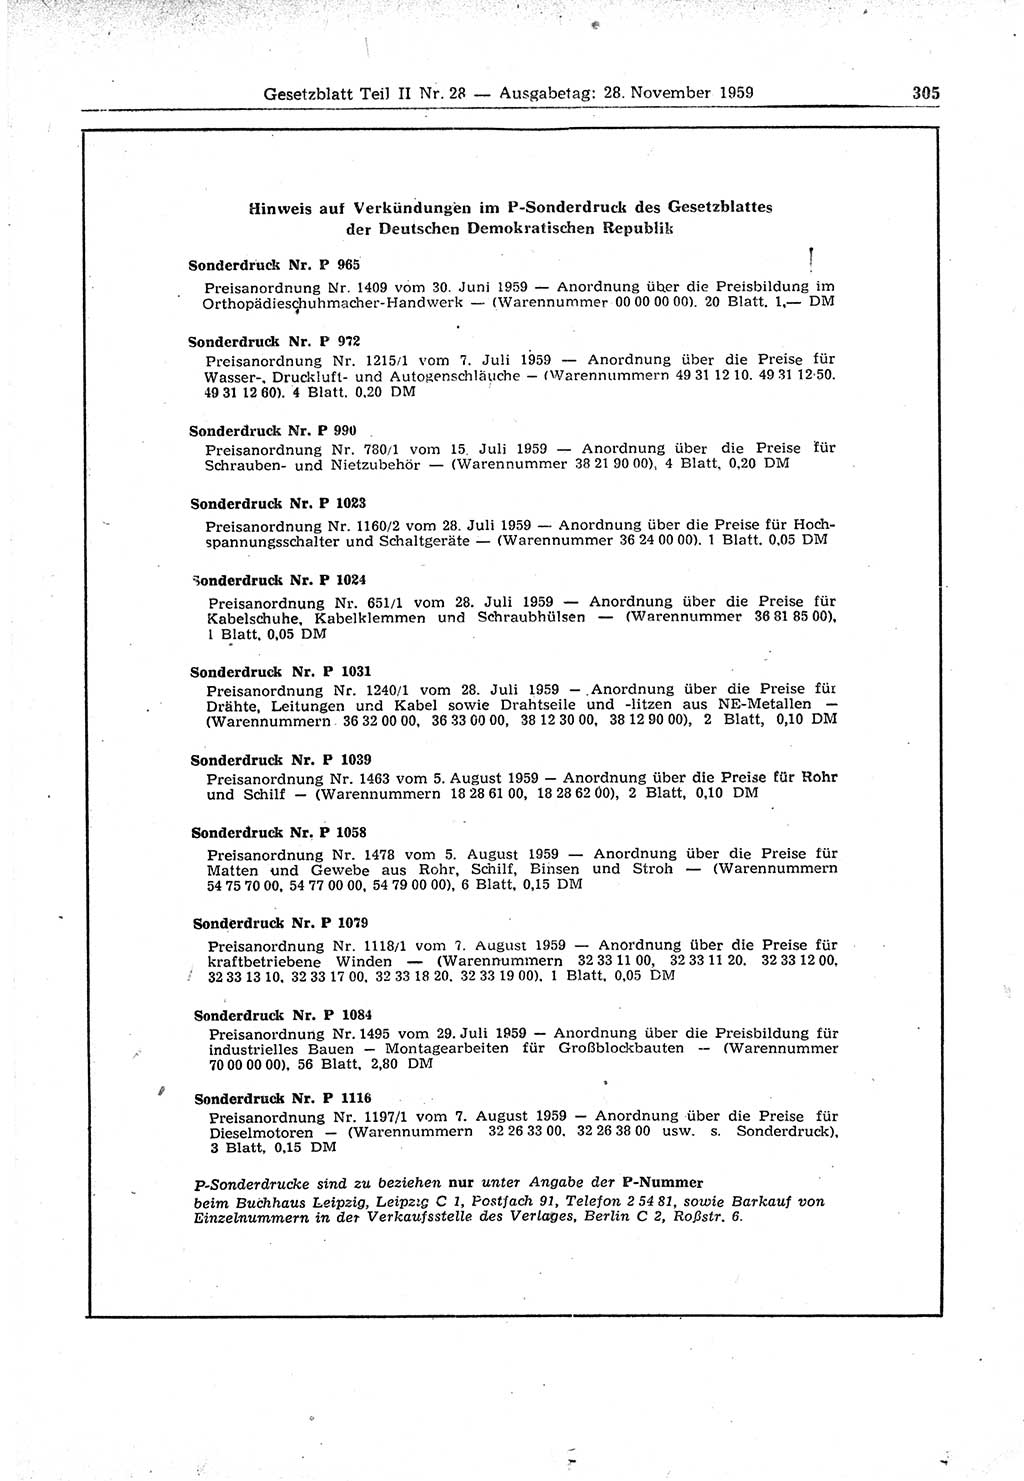 Gesetzblatt (GBl.) der Deutschen Demokratischen Republik (DDR) Teil ⅠⅠ 1959, Seite 305 (GBl. DDR ⅠⅠ 1959, S. 305)